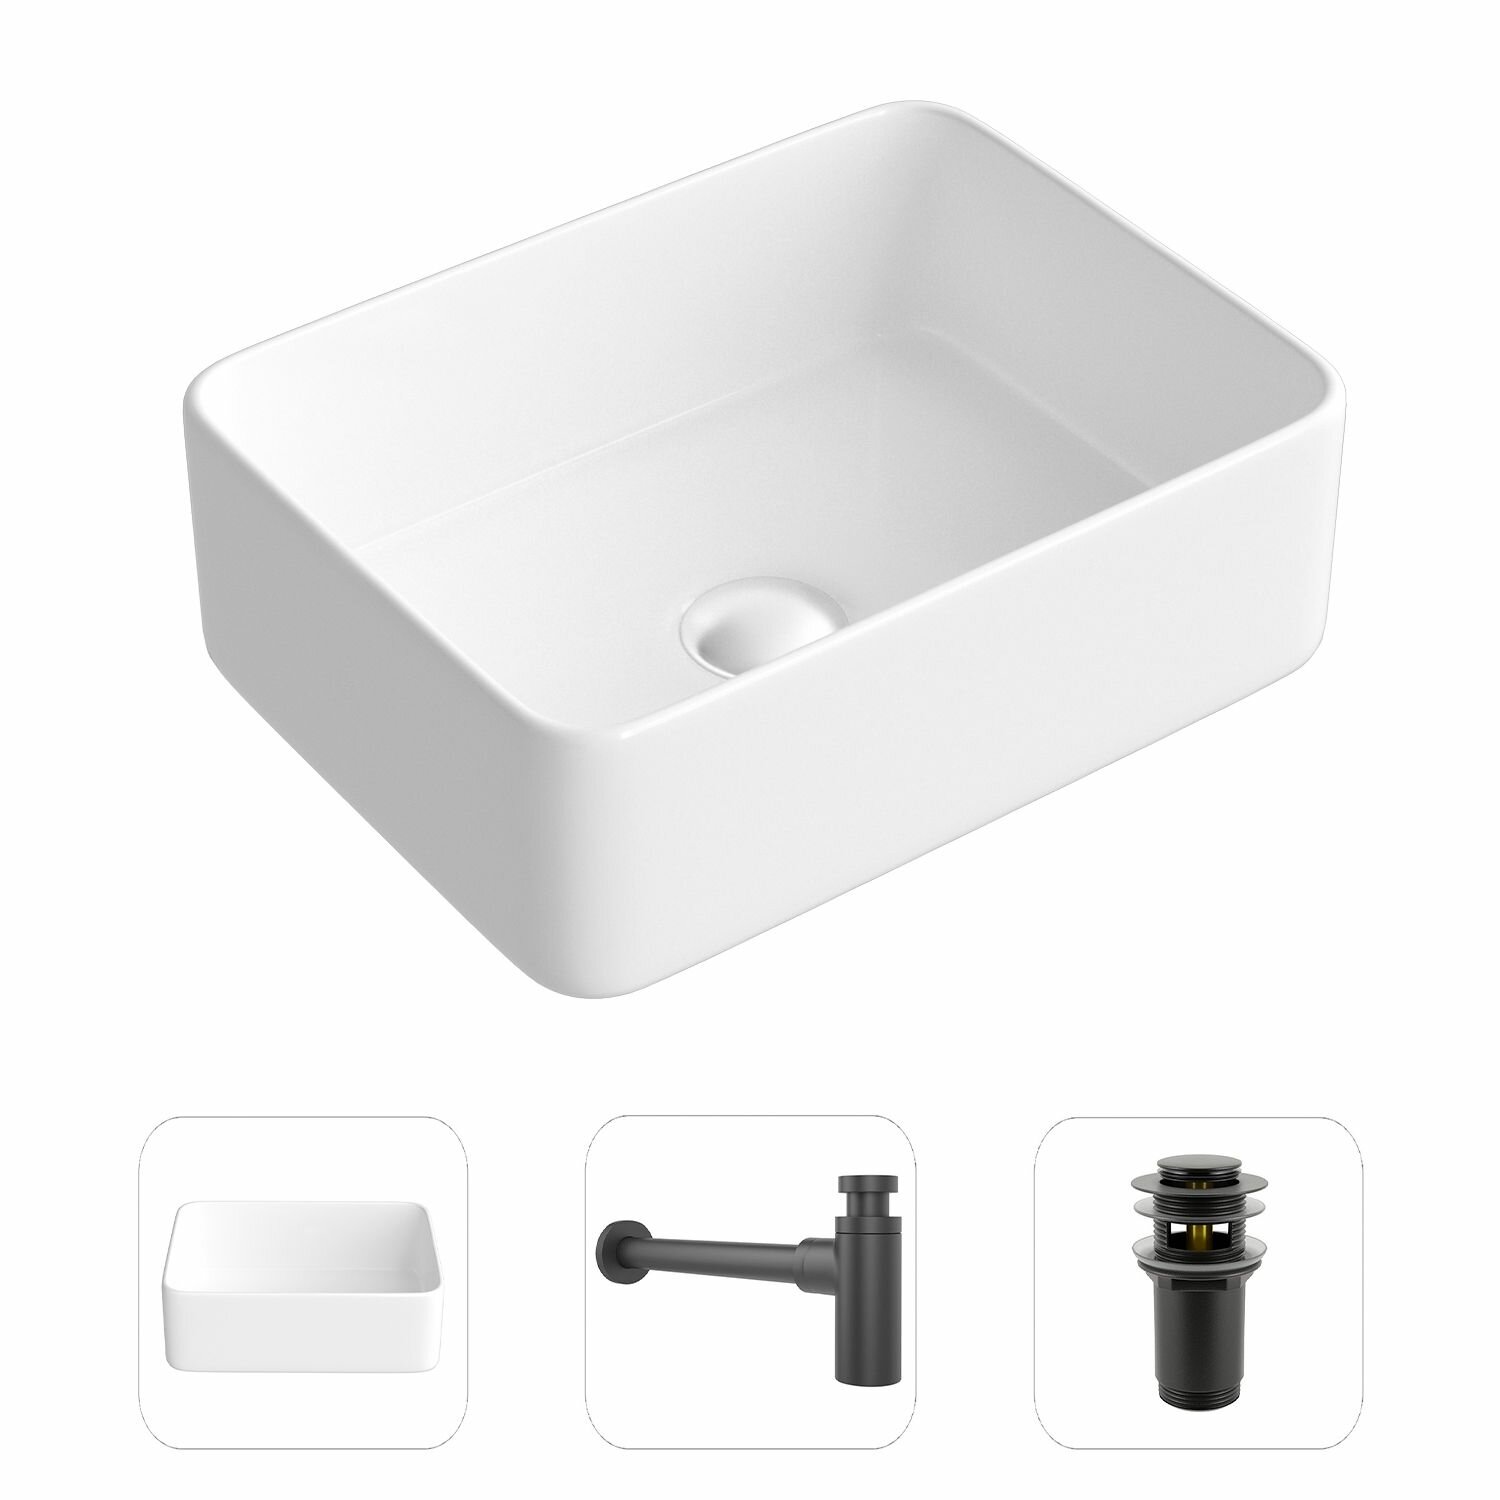 Накладная раковина в ванную Helmken 67440000 комплект 3 в 1: умывальник прямоугольный 40 см, сифон и донный клапан click-clack в цвете черный